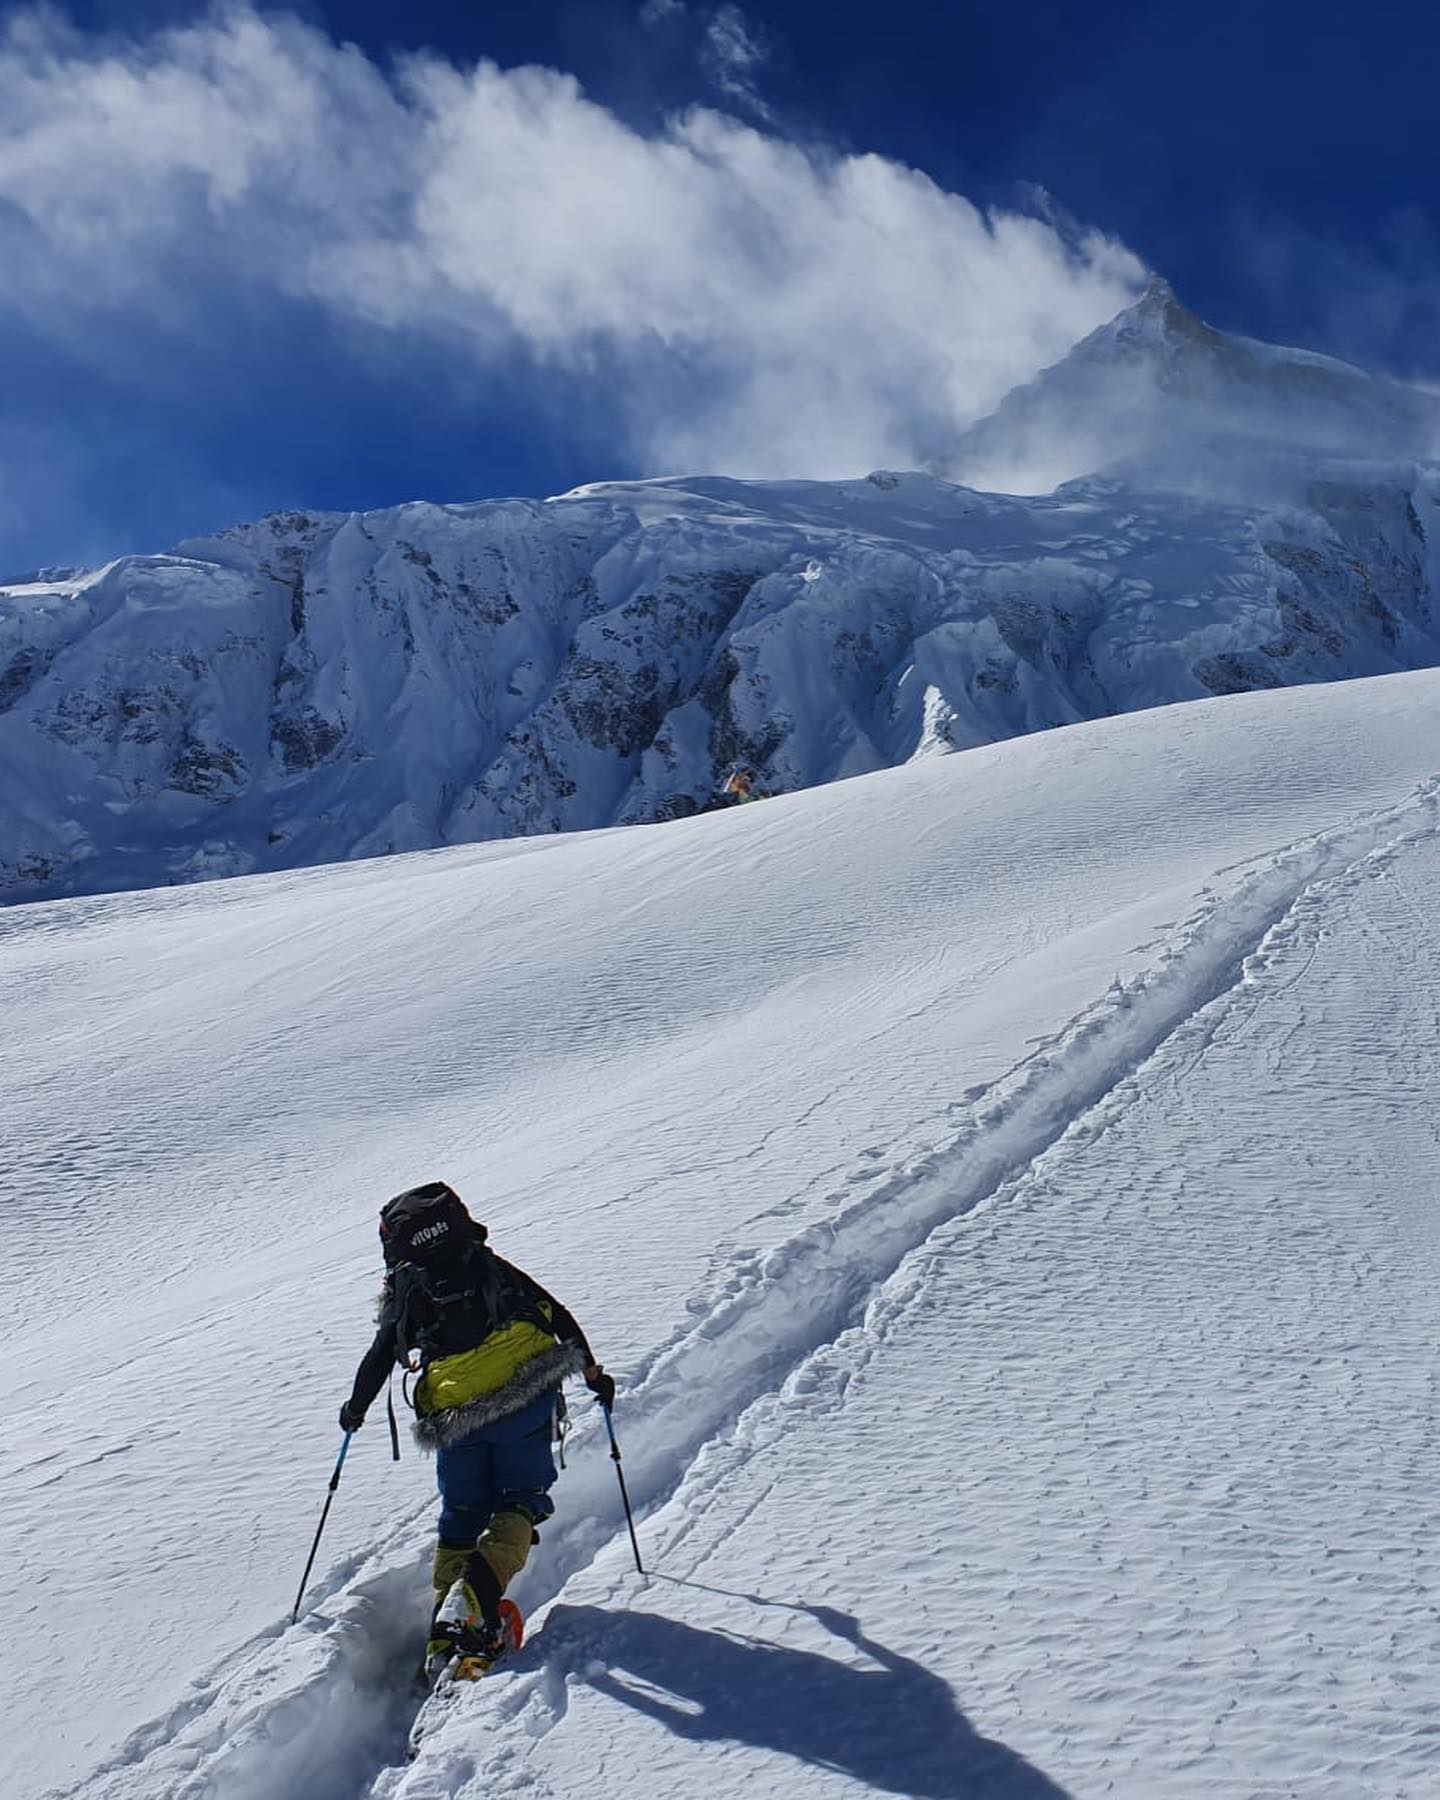 Алекс Тикон (Alex Txikon), Иньяки Альварез (Inaki Alvarez), Чеппал Шерпа (Cheppal Sherpa)  - работа на Манаслу до отметки 5400 метров. 31 декабря 2021 года. Фото Alex Txikon